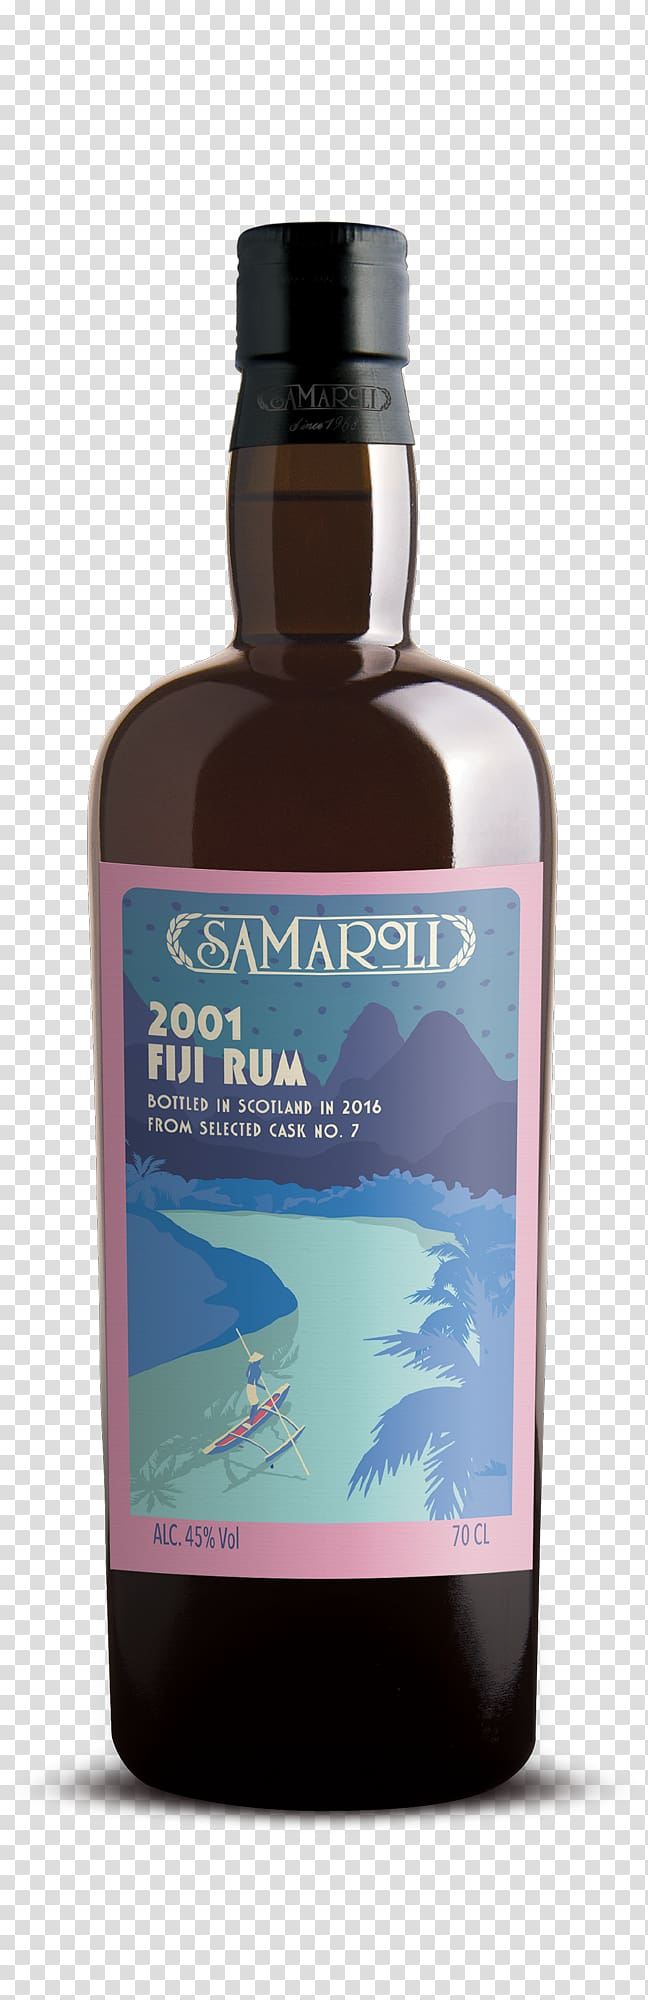 El Dorado Rum Demerara Whiskey Distilled beverage, wine transparent background PNG clipart